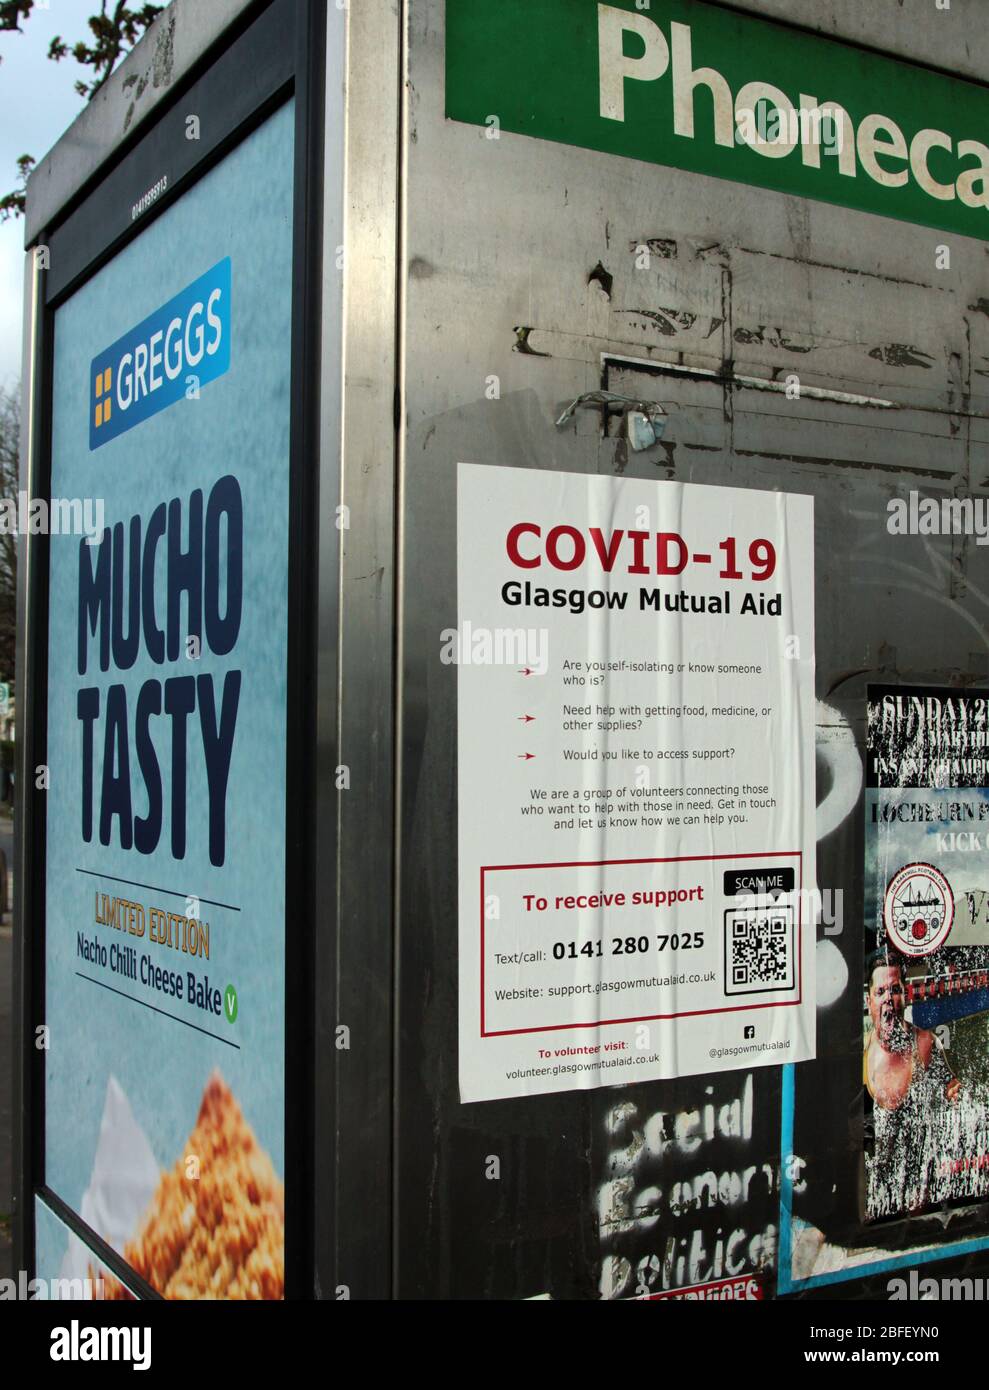 Ein Poster, das Informationen über die lokale Hilfe in Glasgow während der Coronavirus- und Covid-19-Pandemie gibt, die durch Großbritannien wütet. April 2020. ALAN/WYLIE/ALAMY© Stockfoto